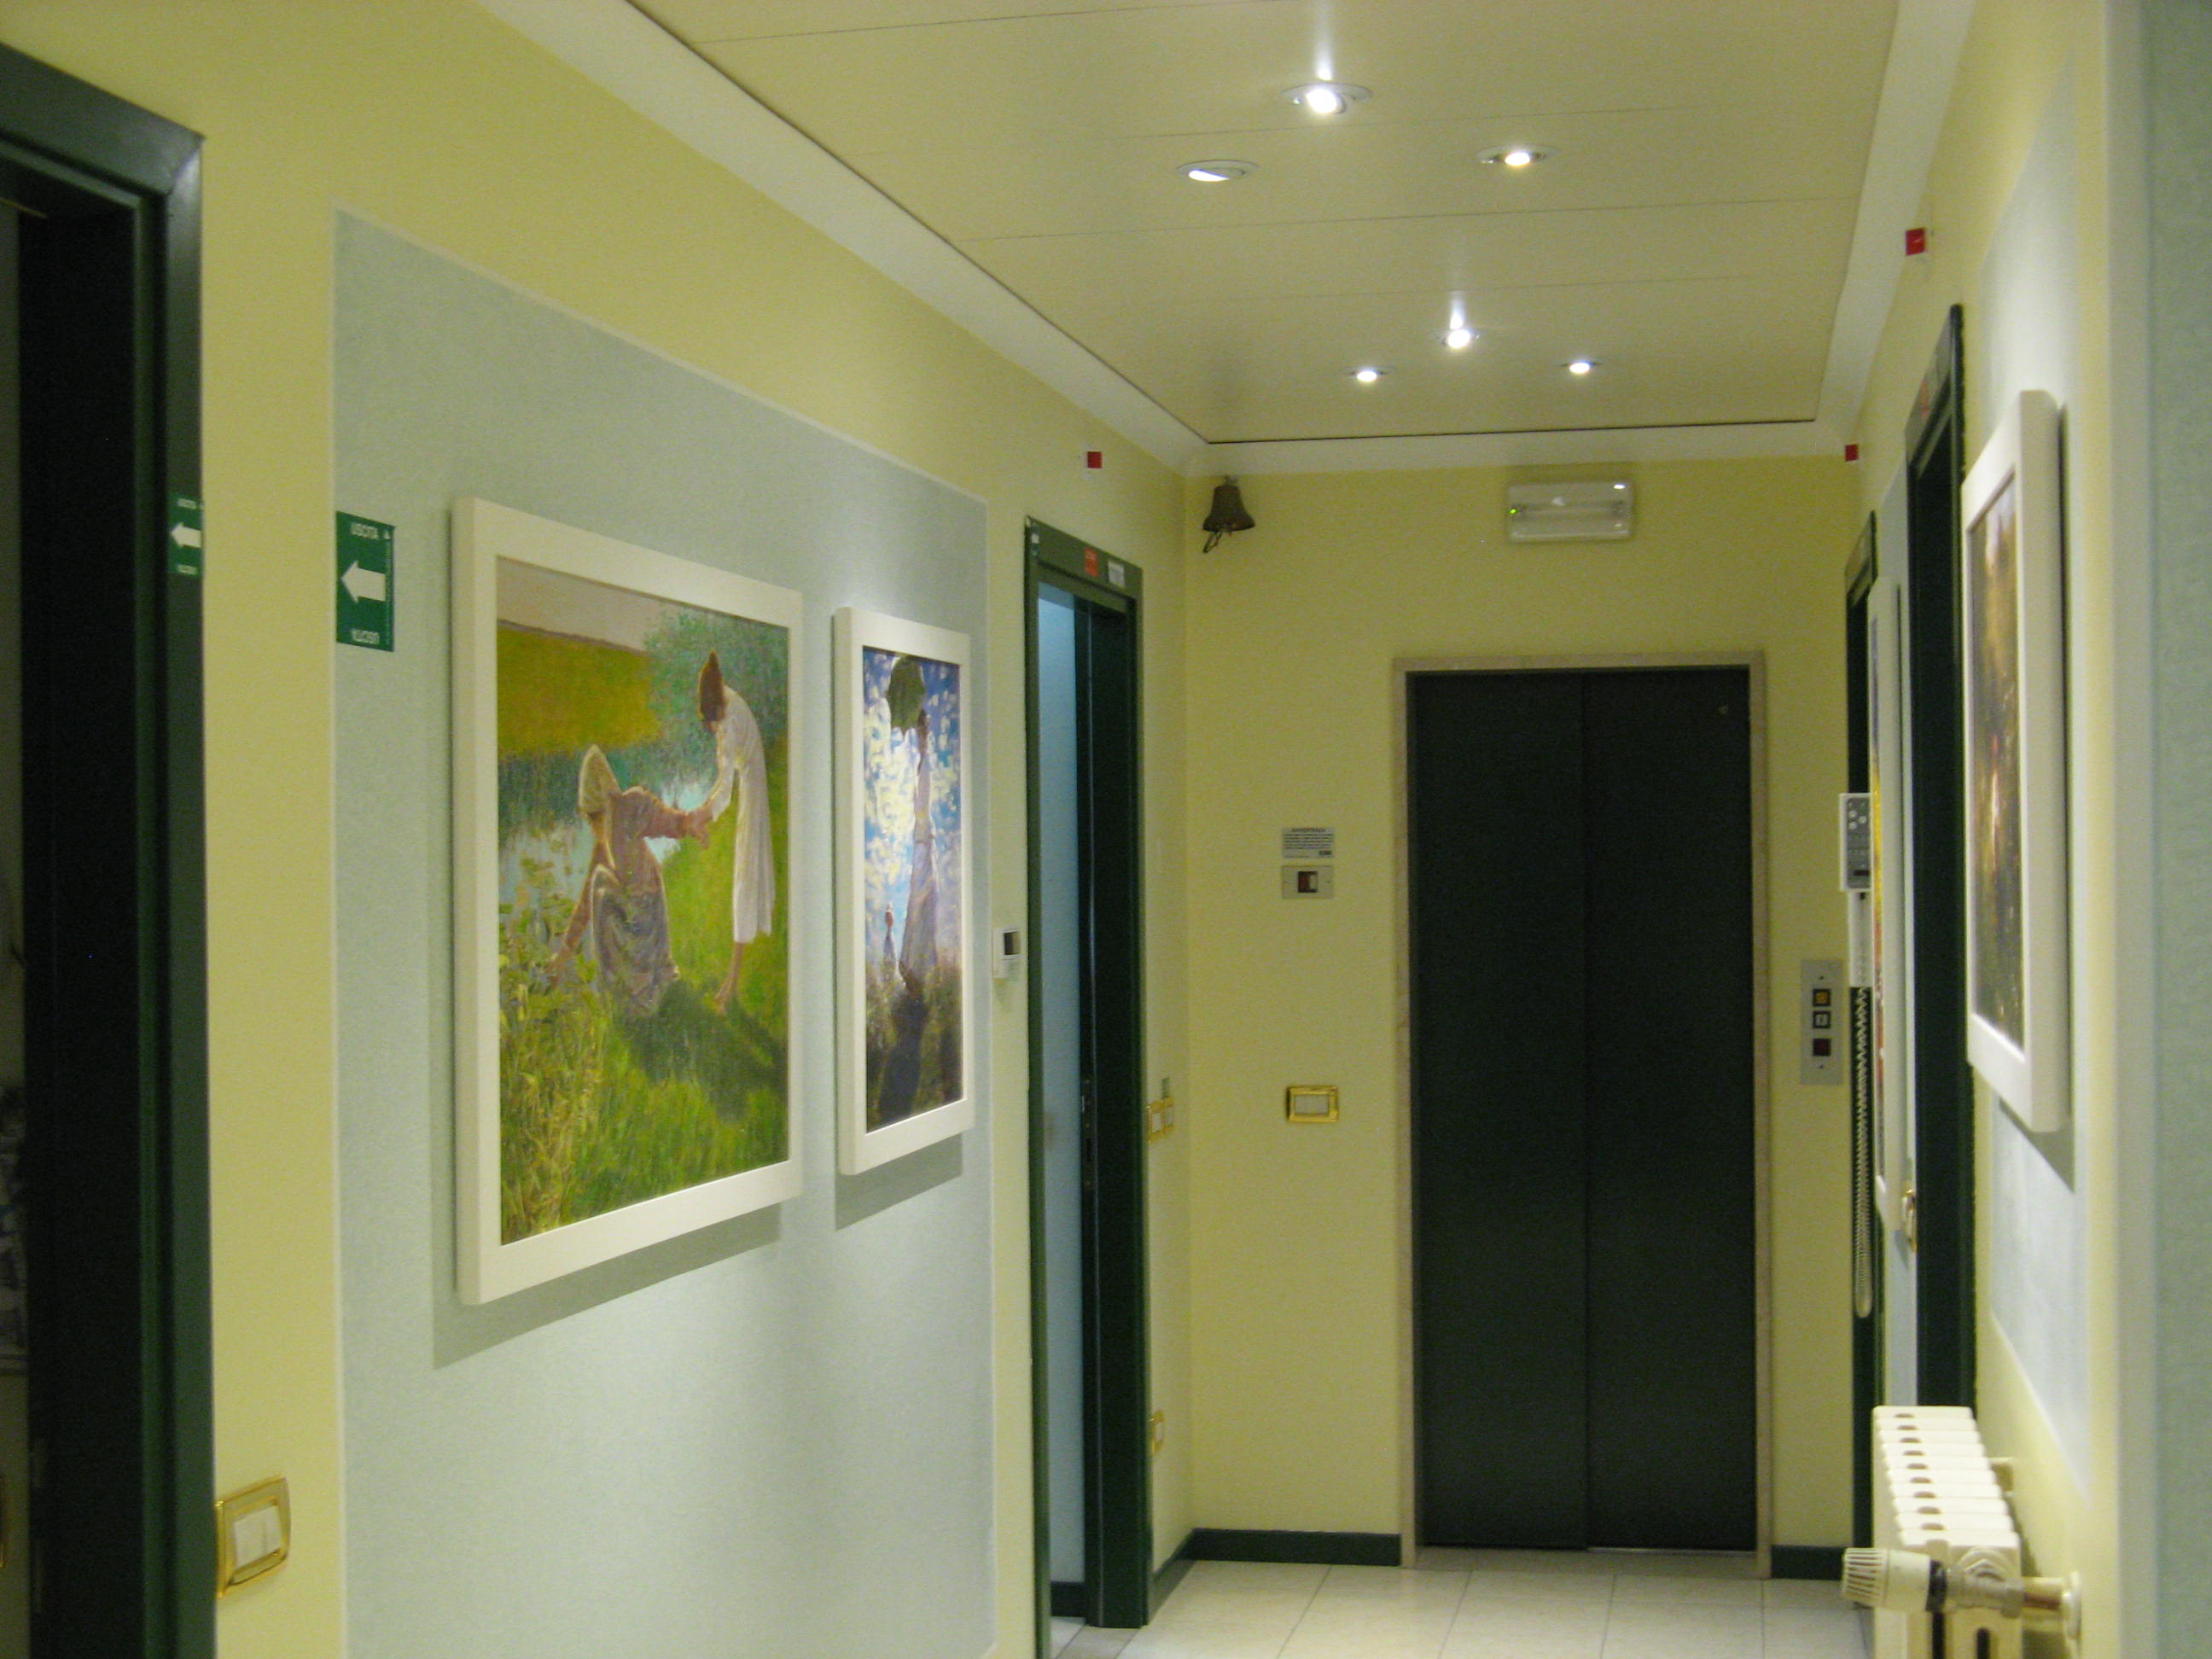 Studio dentistico - Brescia